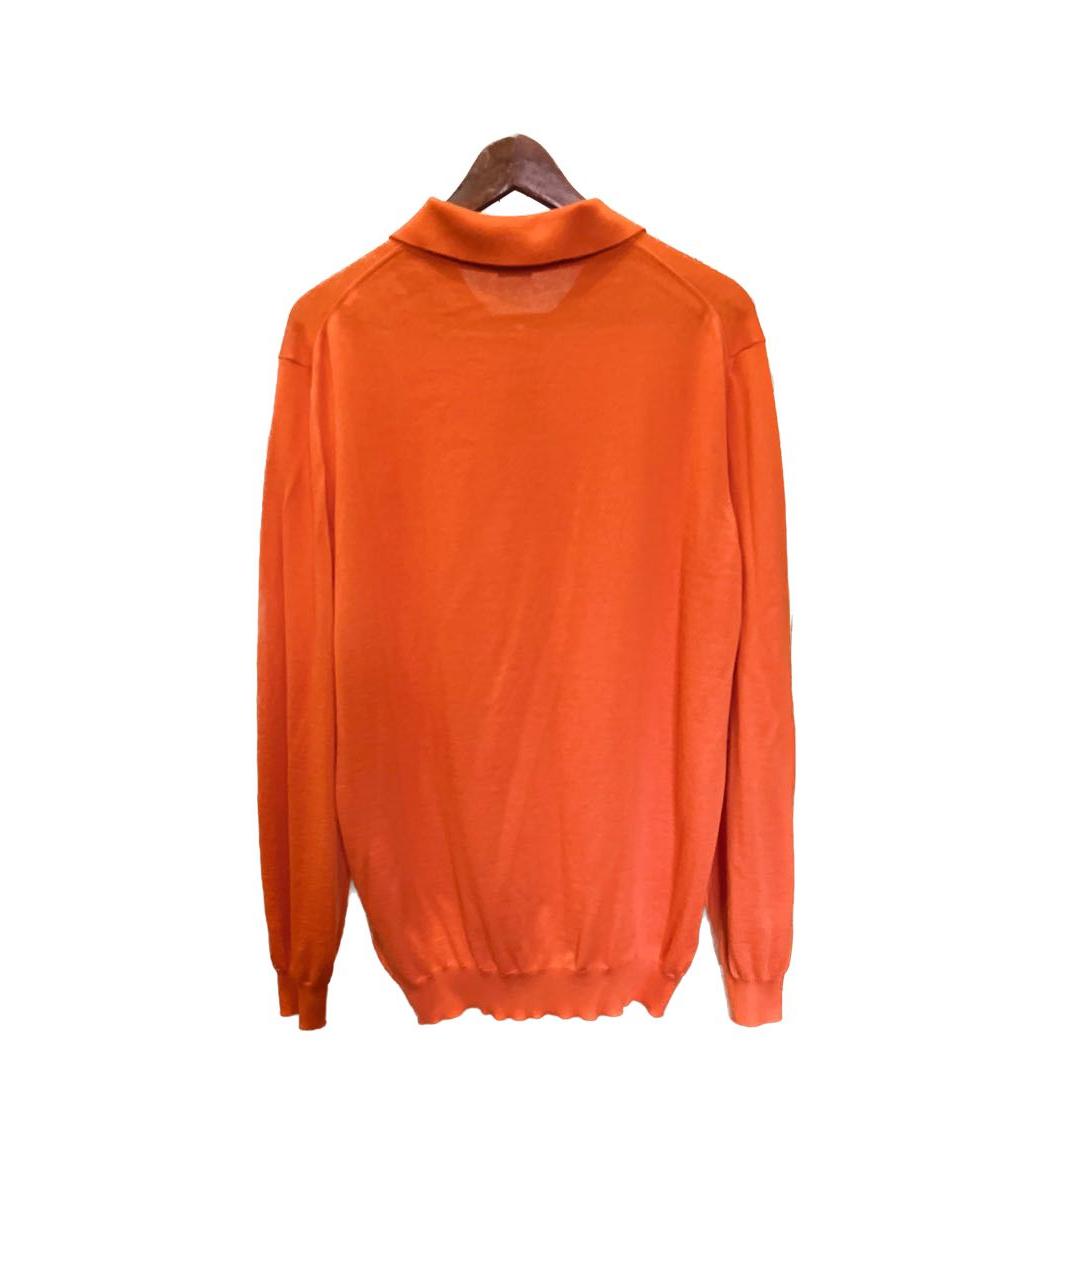 MALO Оранжевый кашемировый джемпер / свитер, фото 2